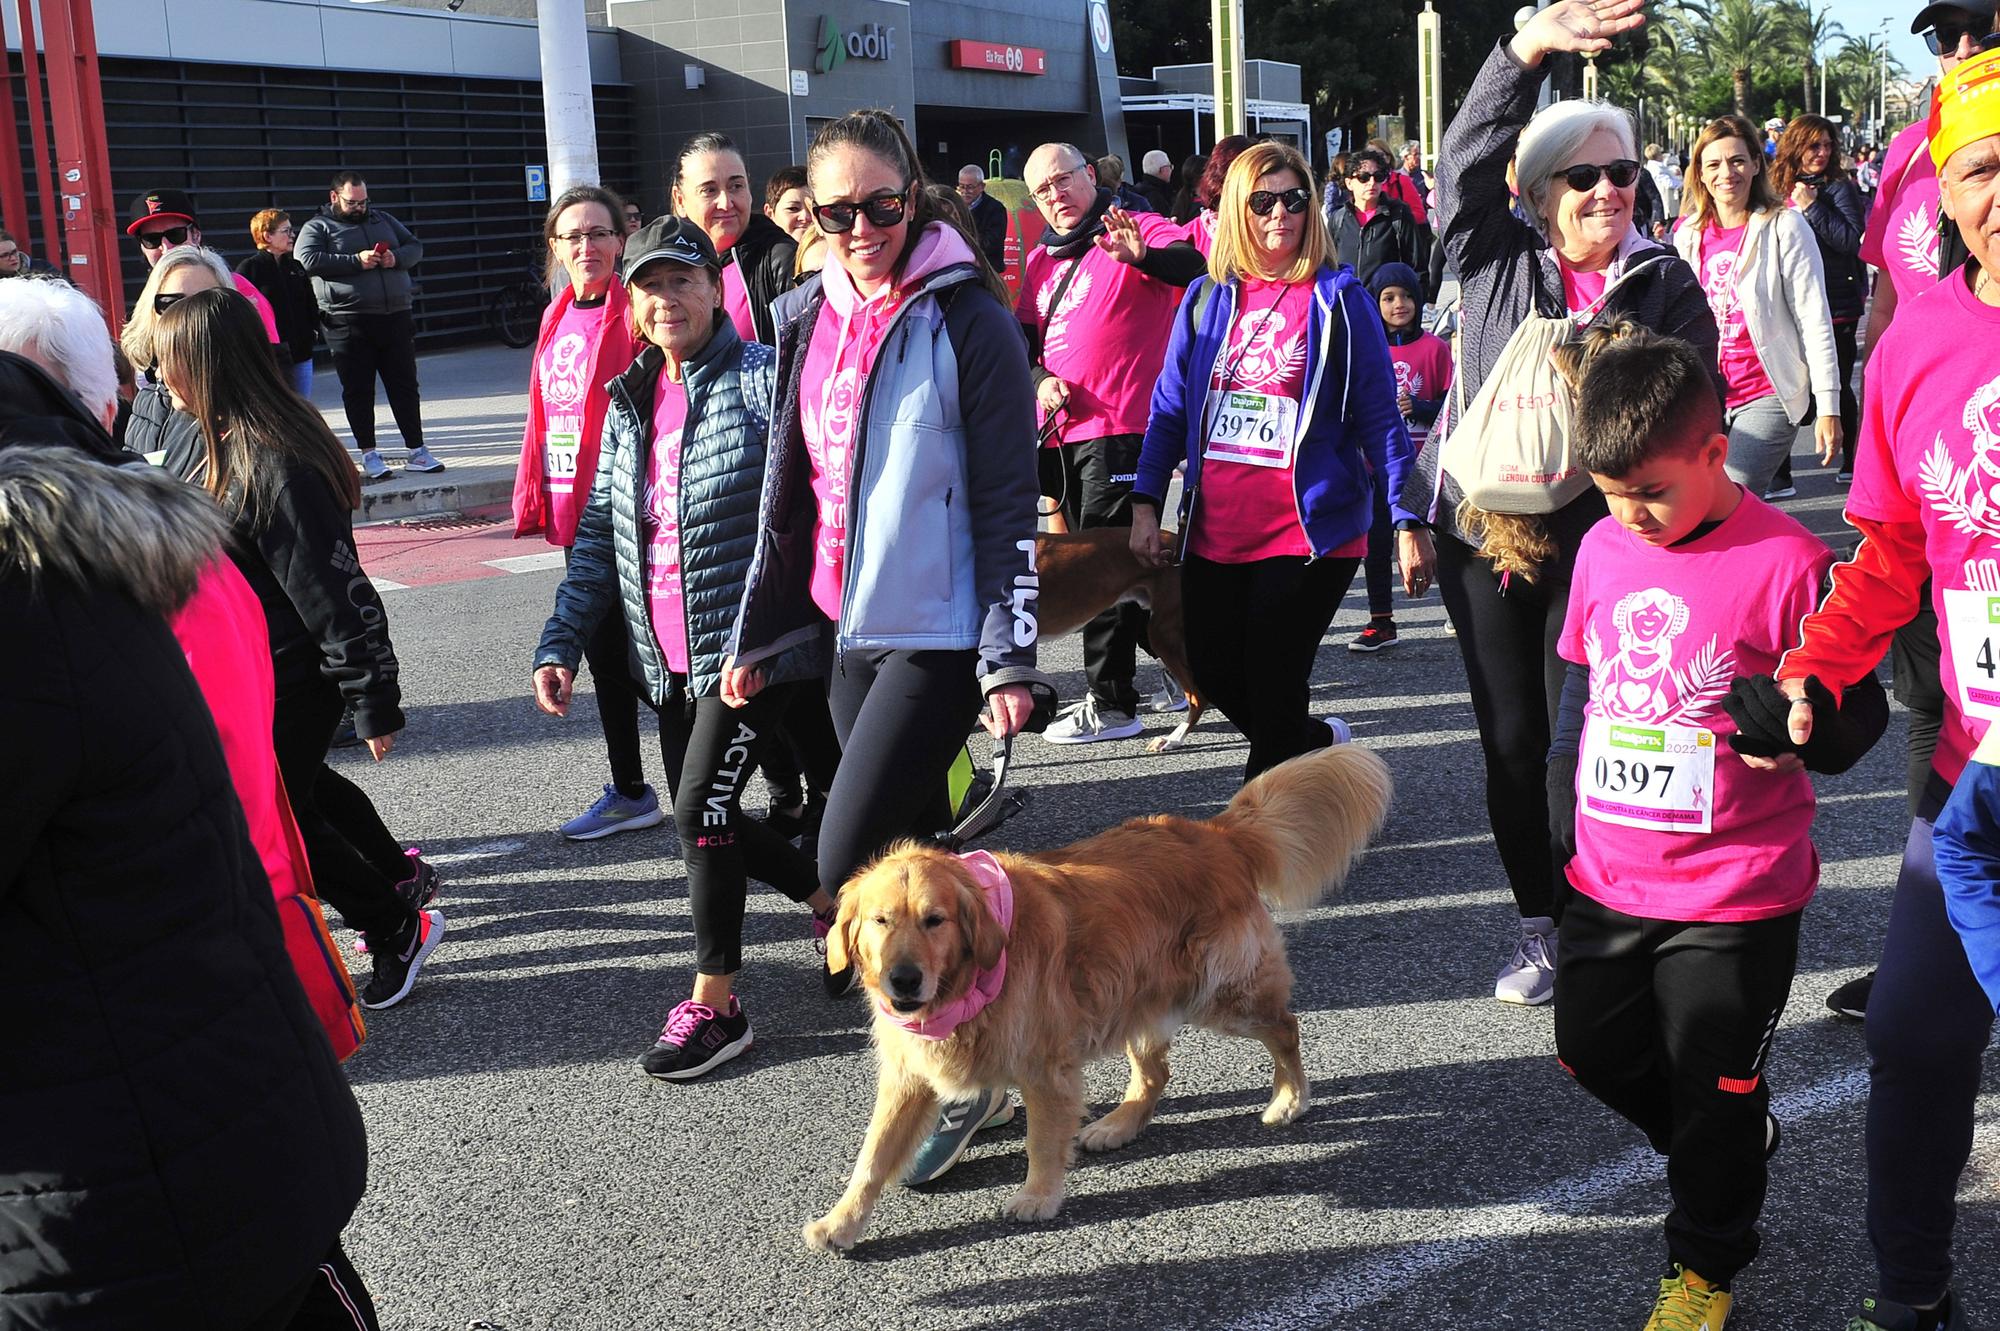 Más de 8.000 solidarios contra el cáncer de mama en Elche